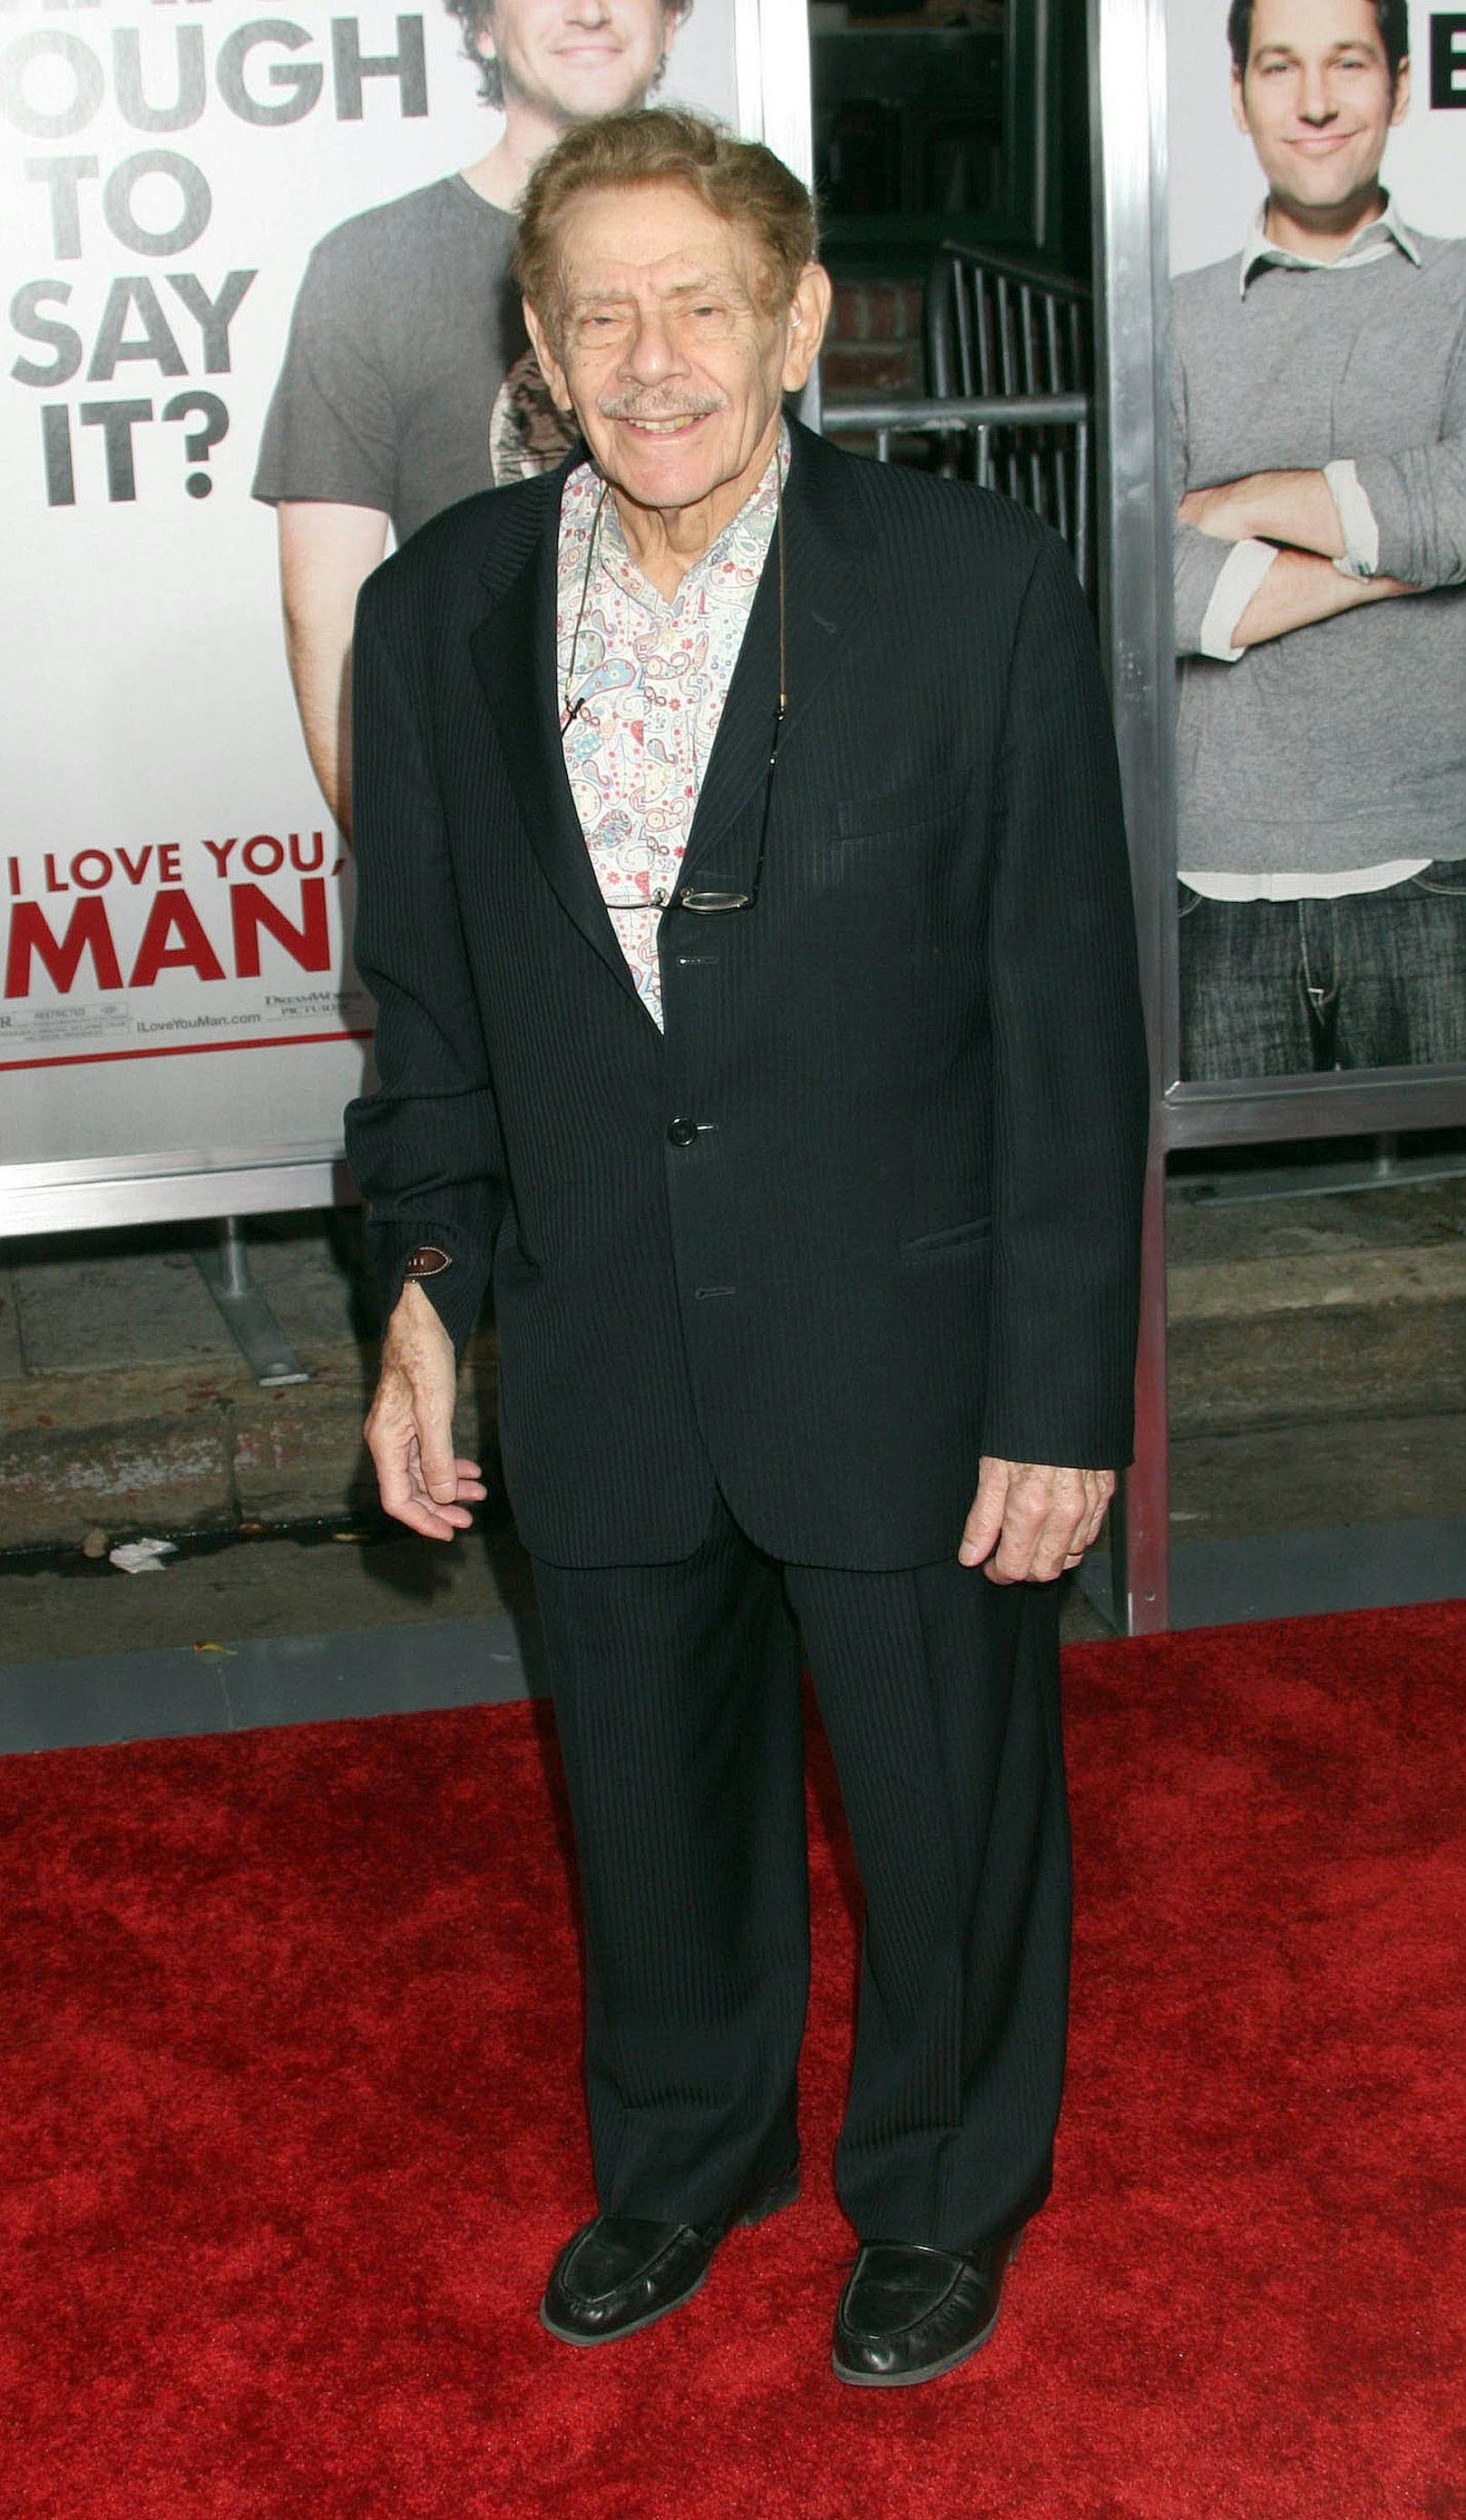 Jerry Stiller war neben "King of Queens" auch in der Serie "Seinfeld" zu sehen.